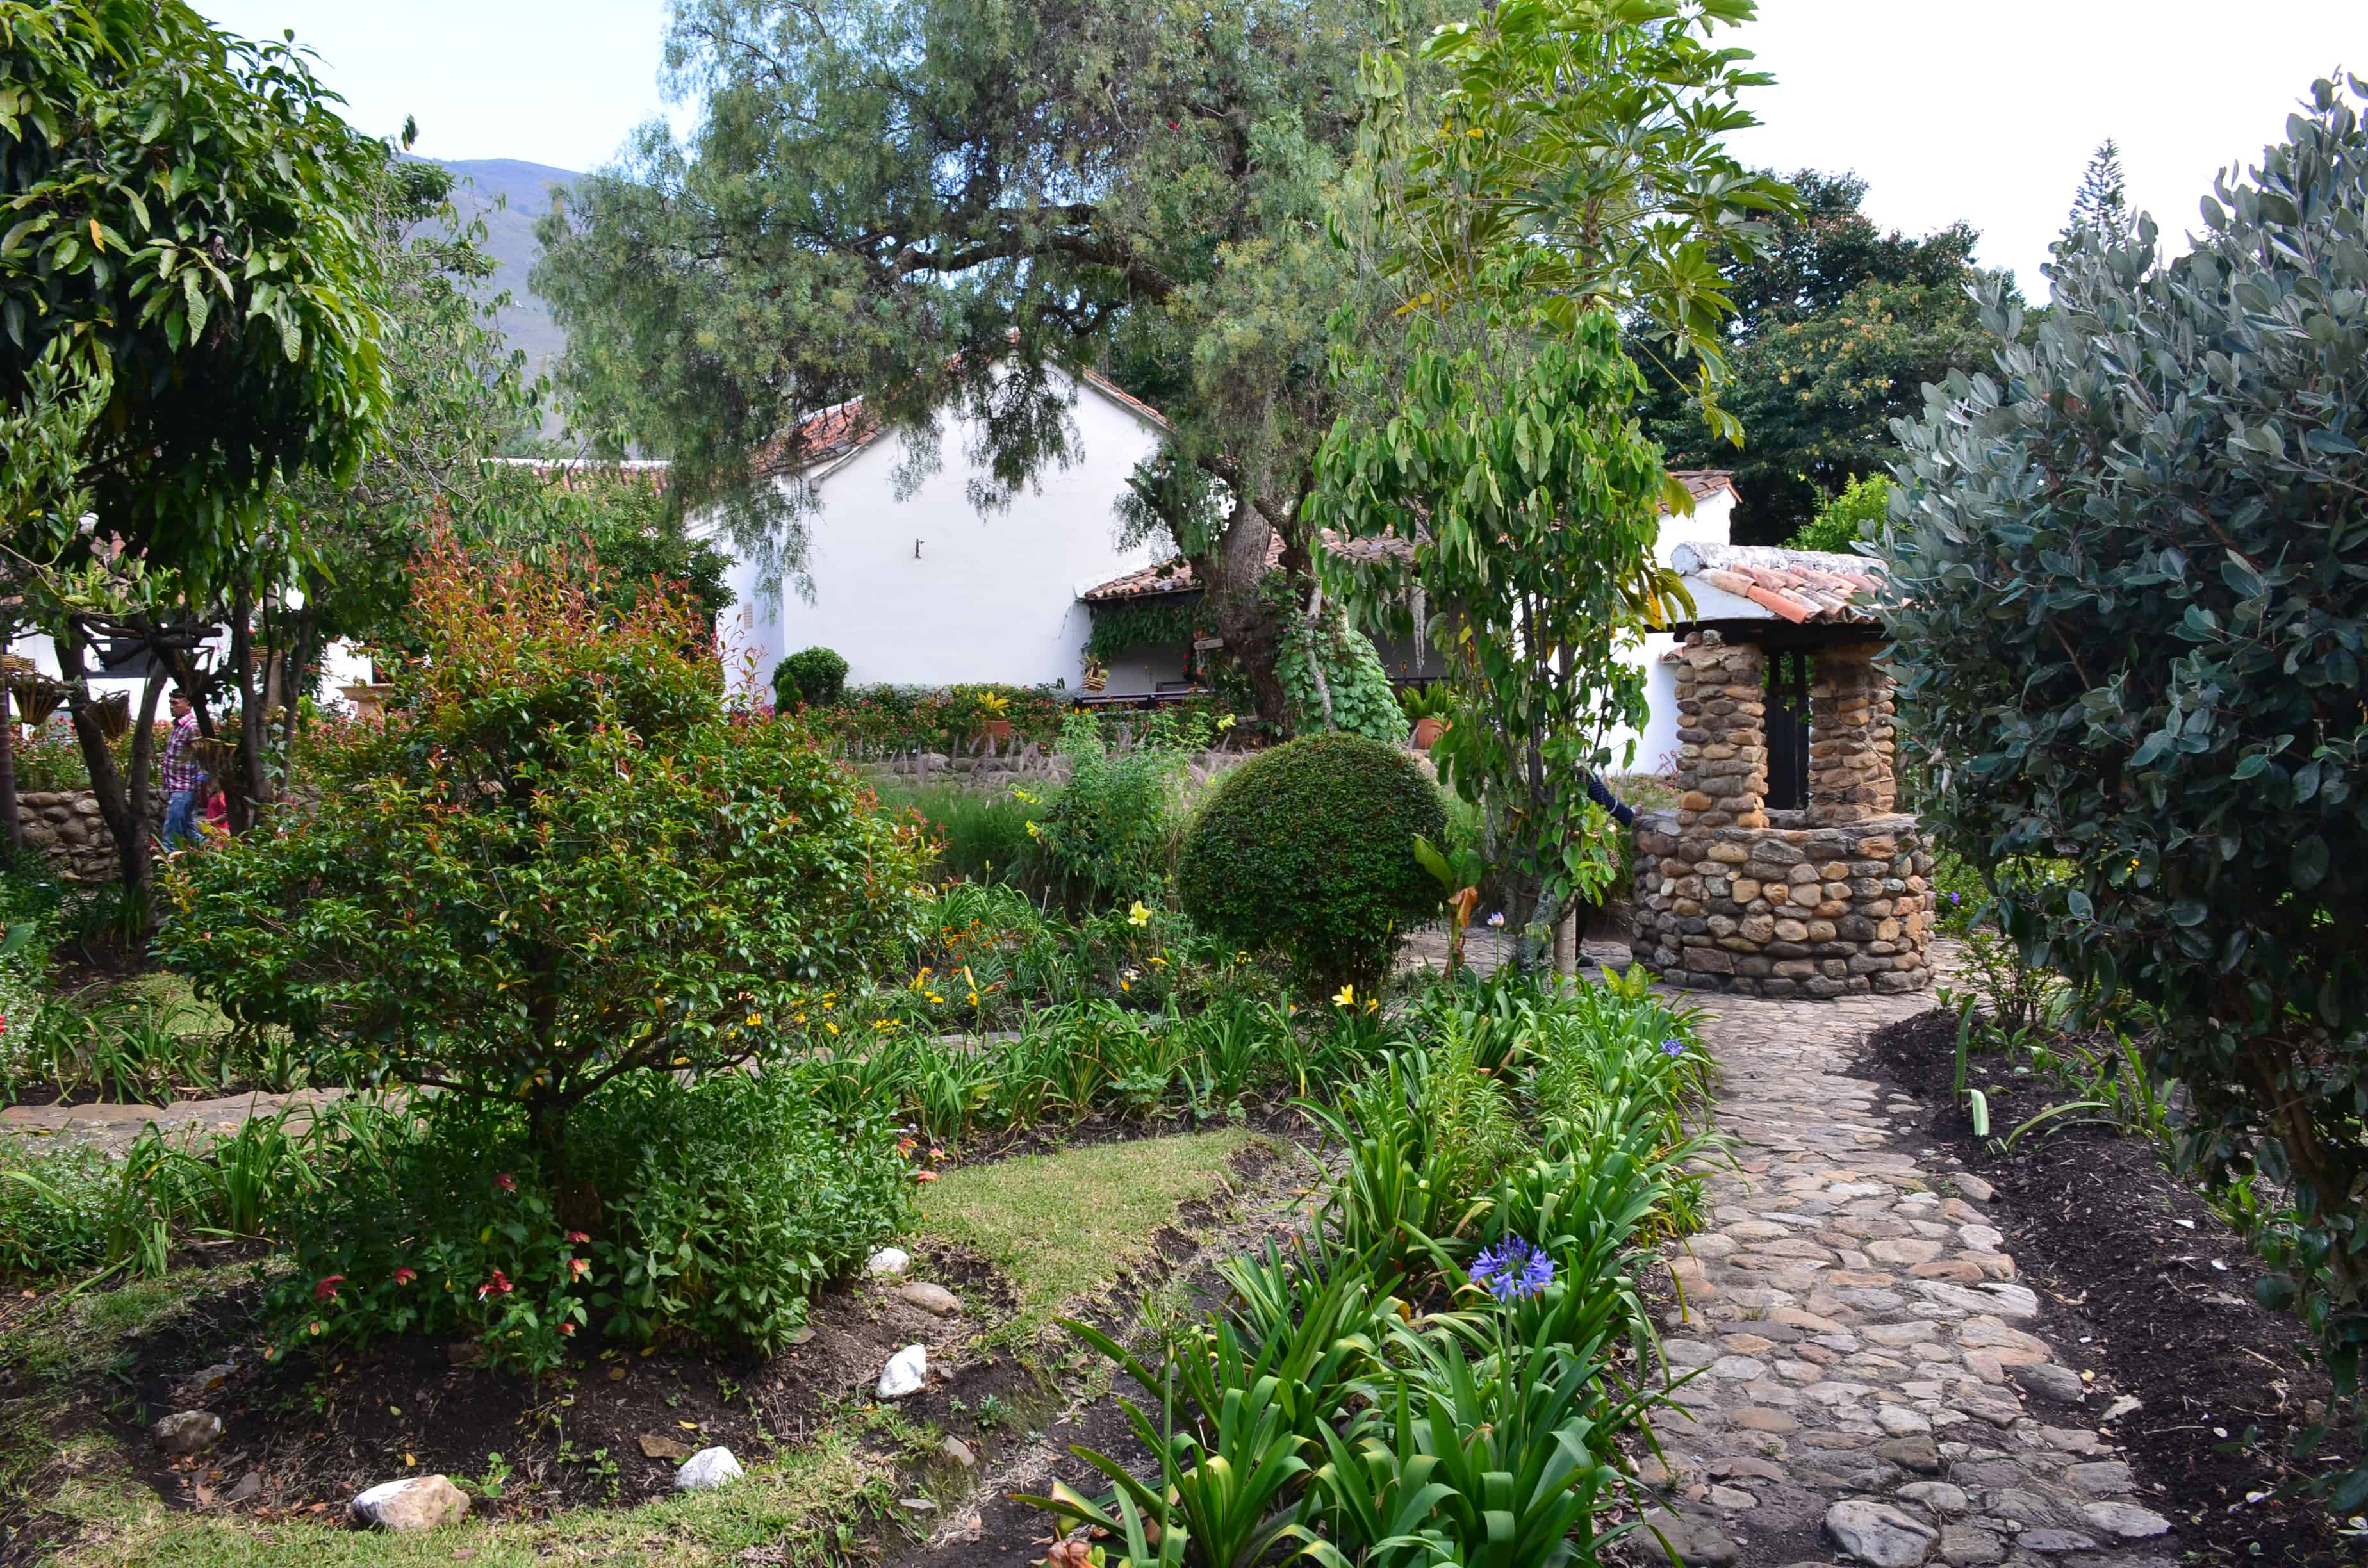 Garden at the Antonio Ricaurte House Museum in Villa de Leyva, Boyacá, Colombia